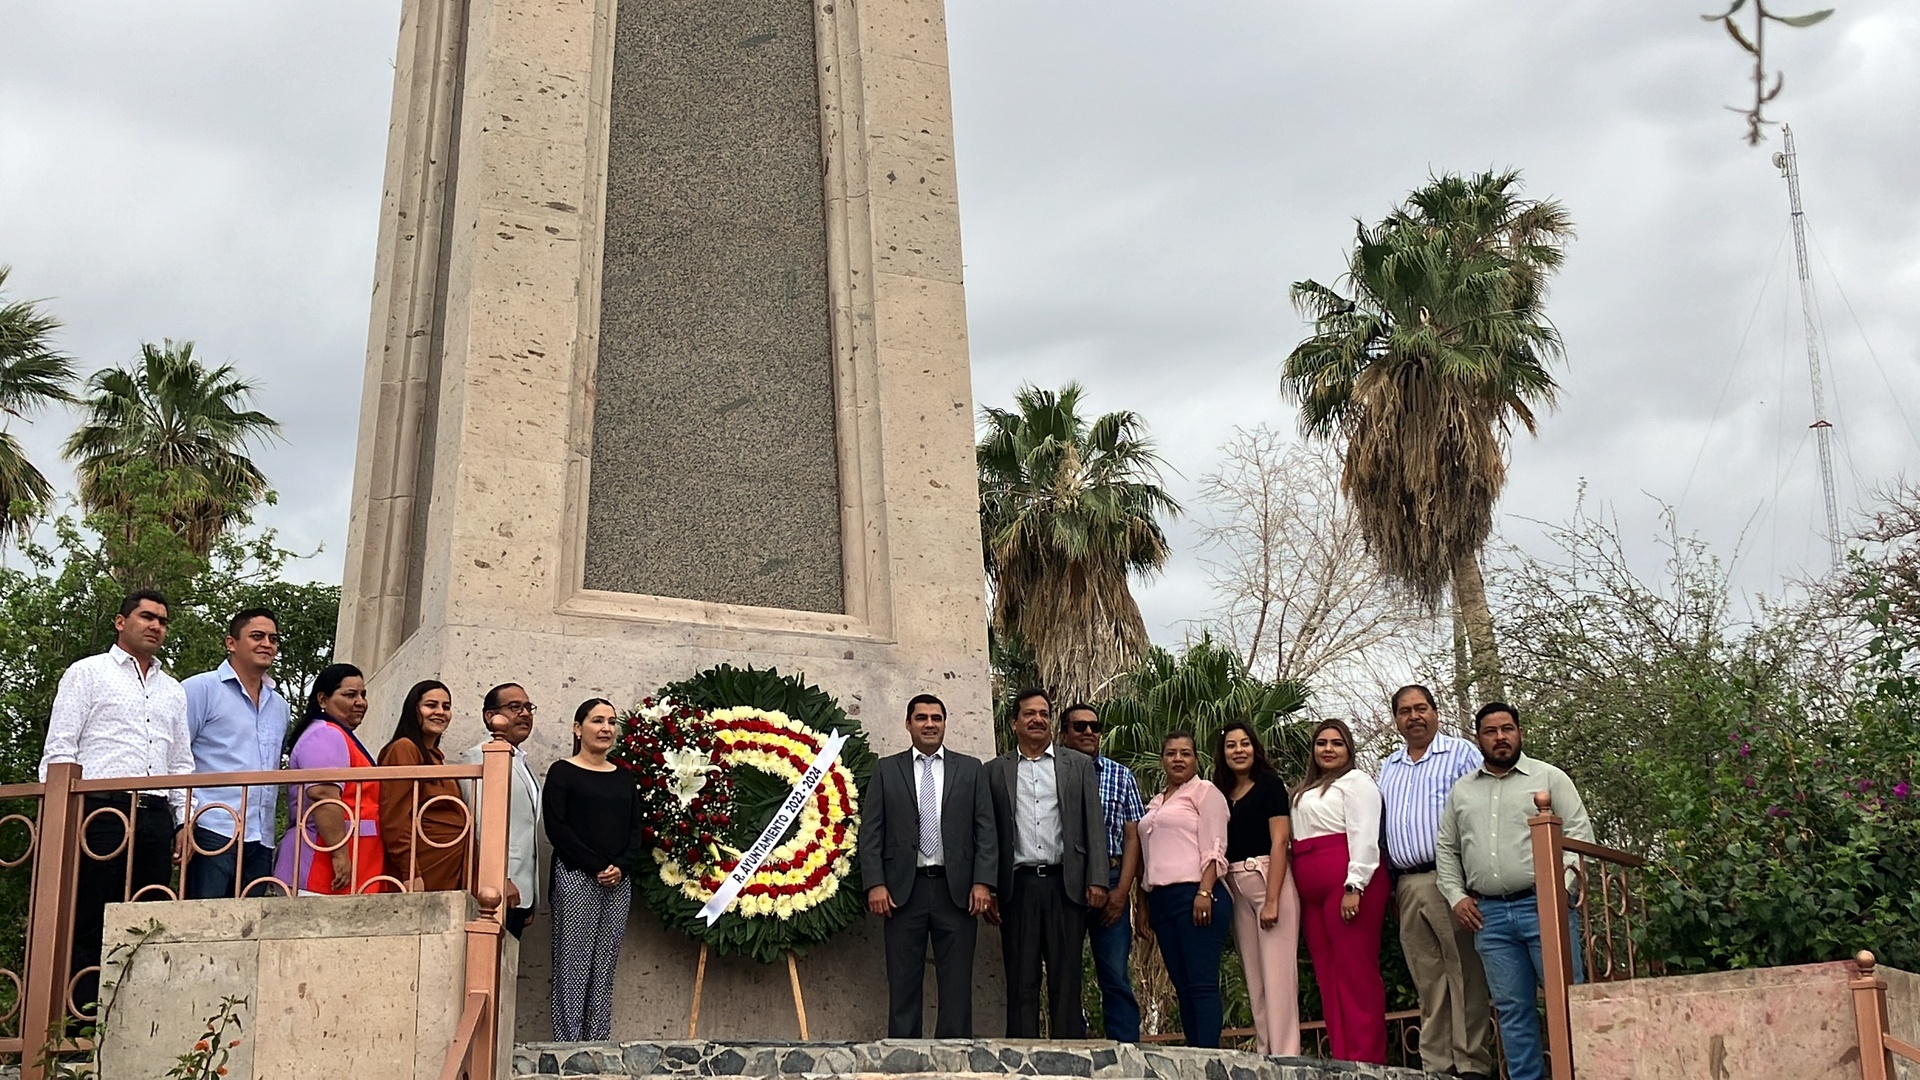 El evento tuvo lugar frente al Obelisco, el cual se encuentra en la Plaza Principal de San Pedro. (Foto: MARY VÁZQUEZ / EL SIGLO DE TORREÓN)